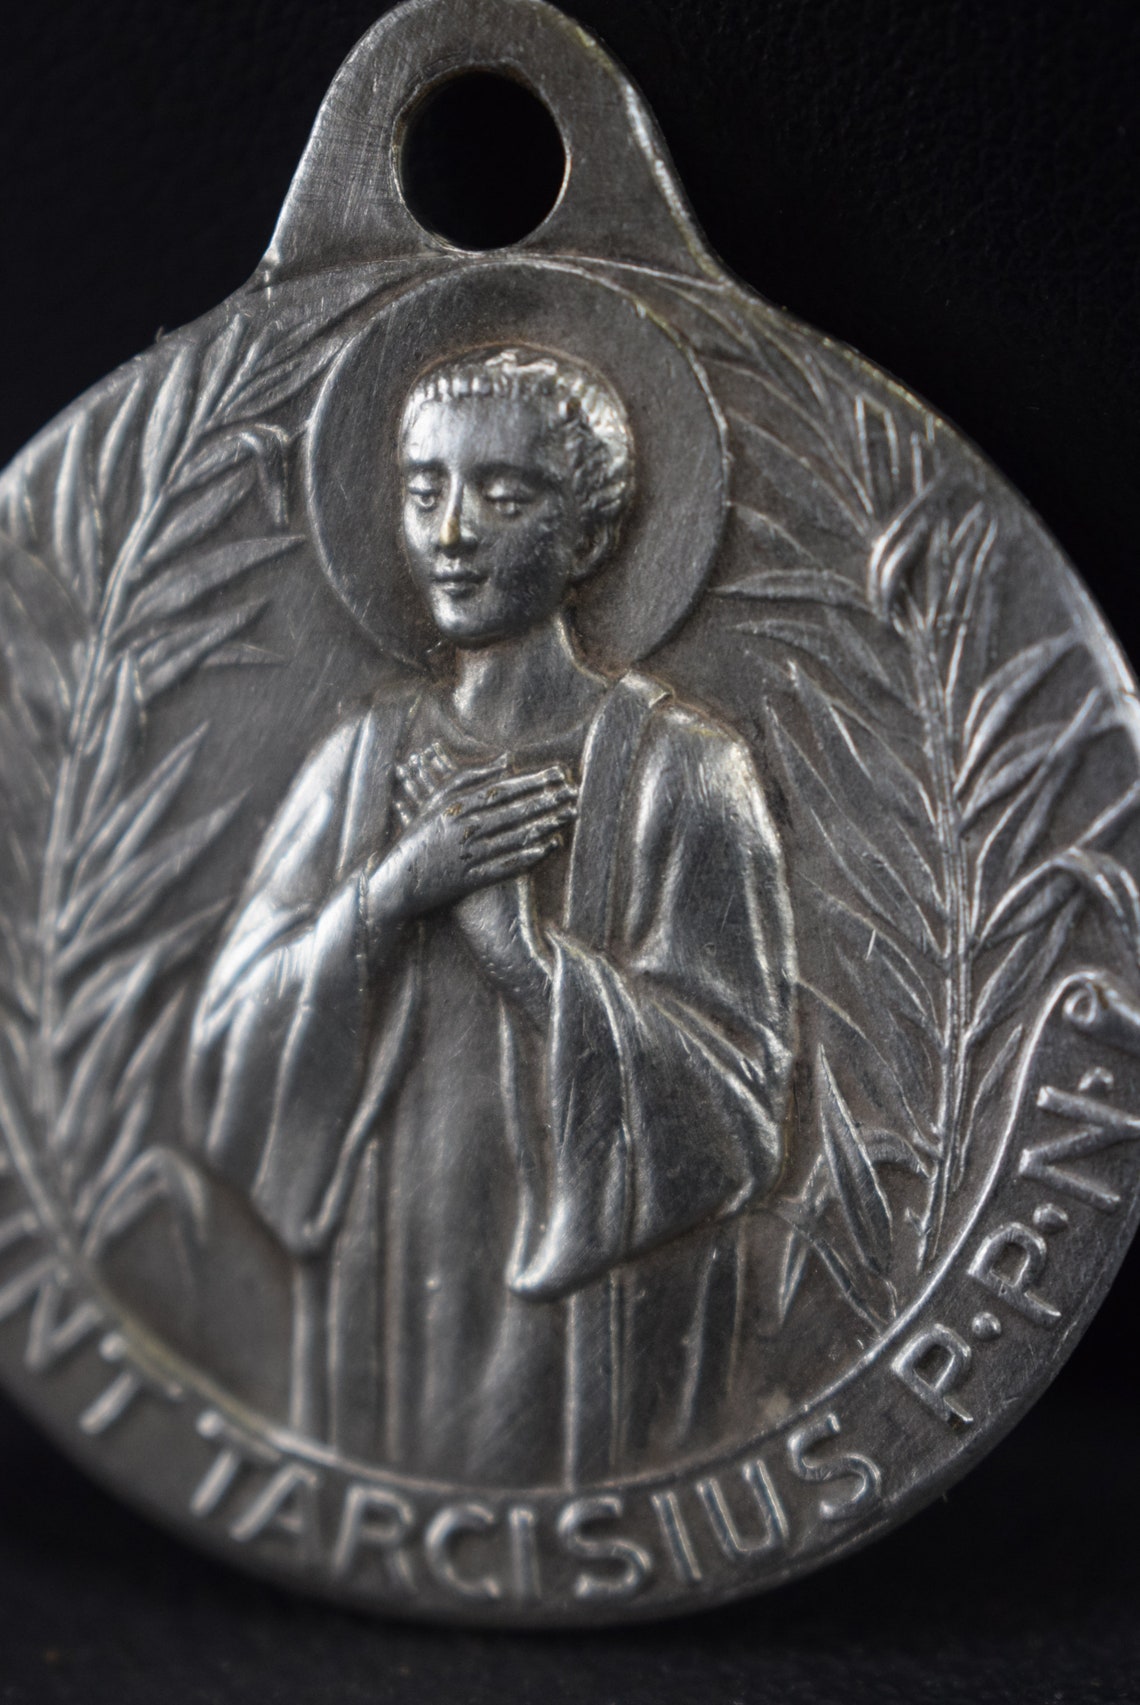 St Tarcisius Medal by Tshudin